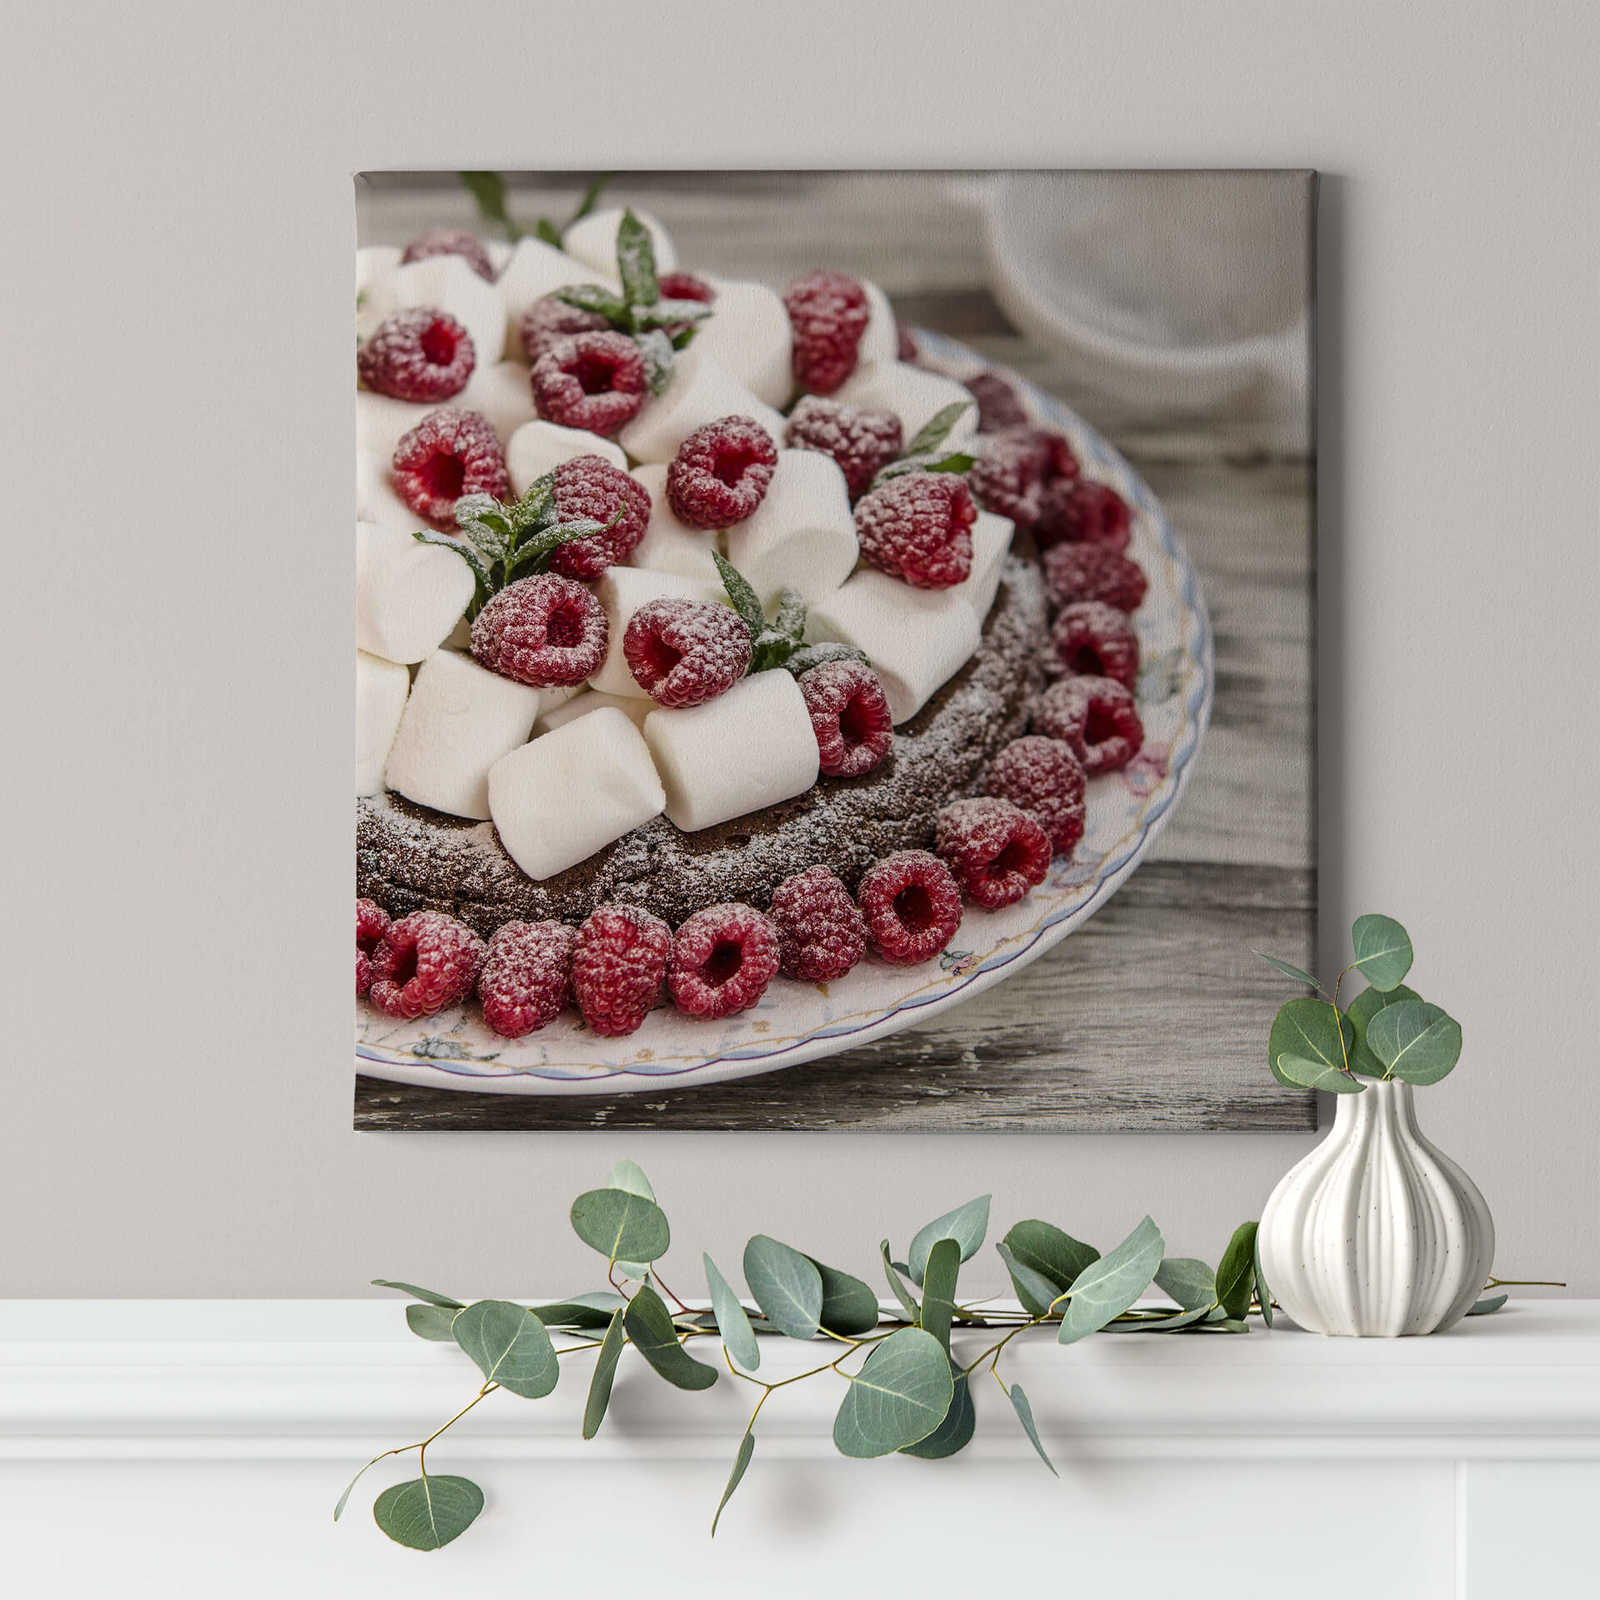             Toile carrée Gâteau avec framboises et bonbons - 0,50 m x 0,50 m
        